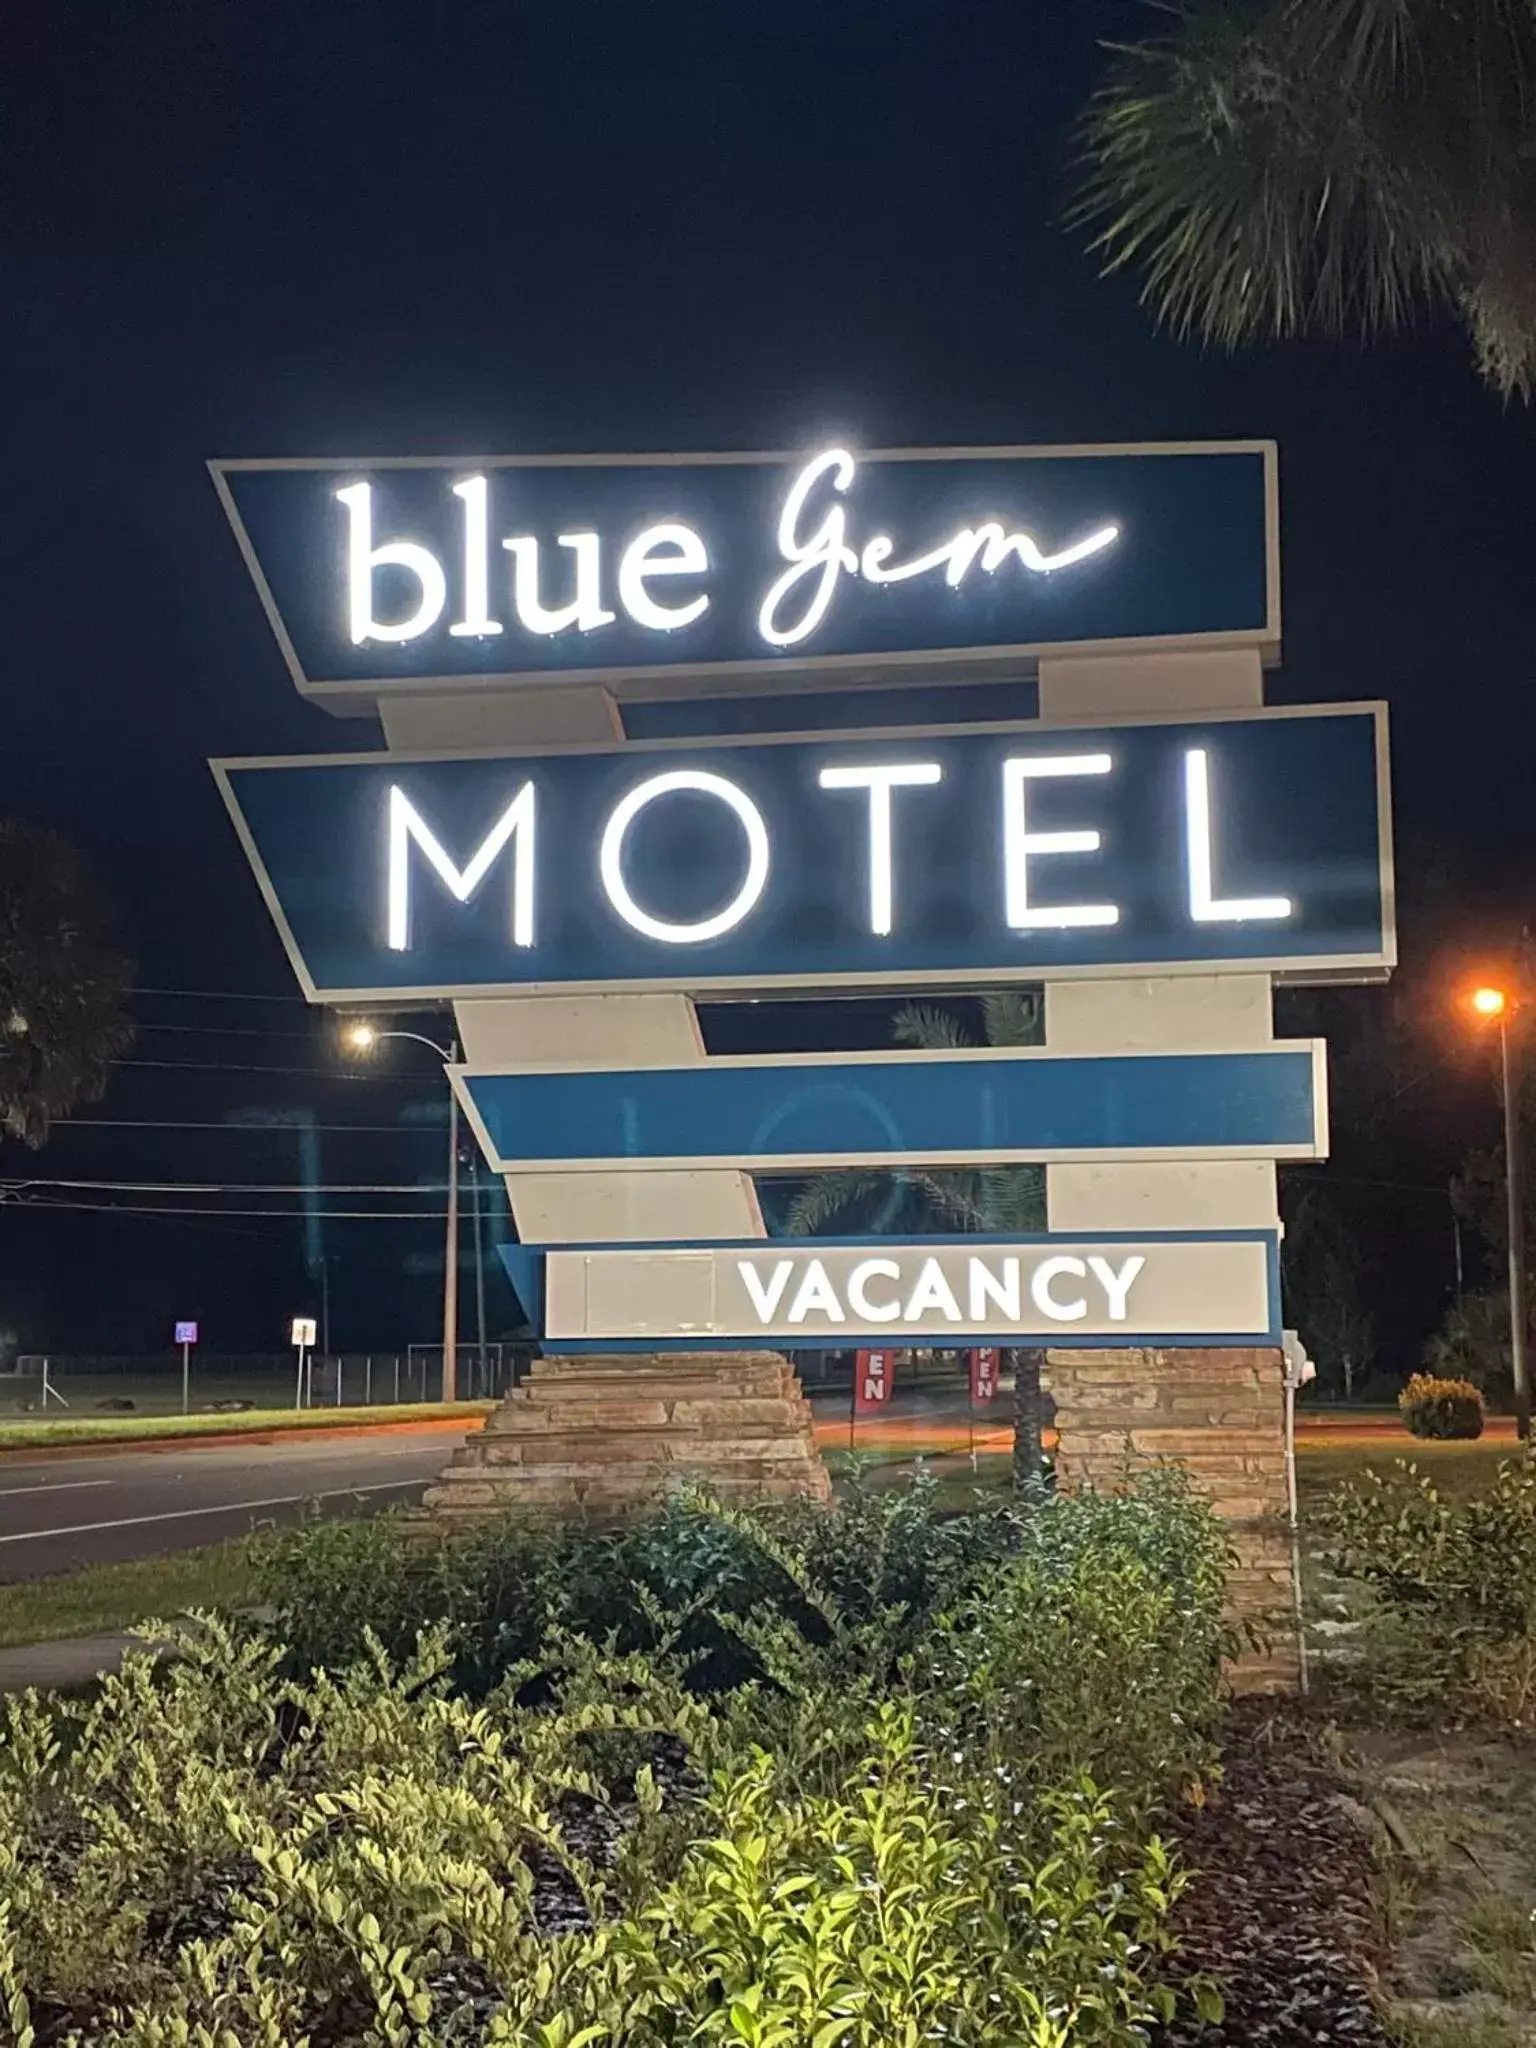 Night in BlueGem Motel